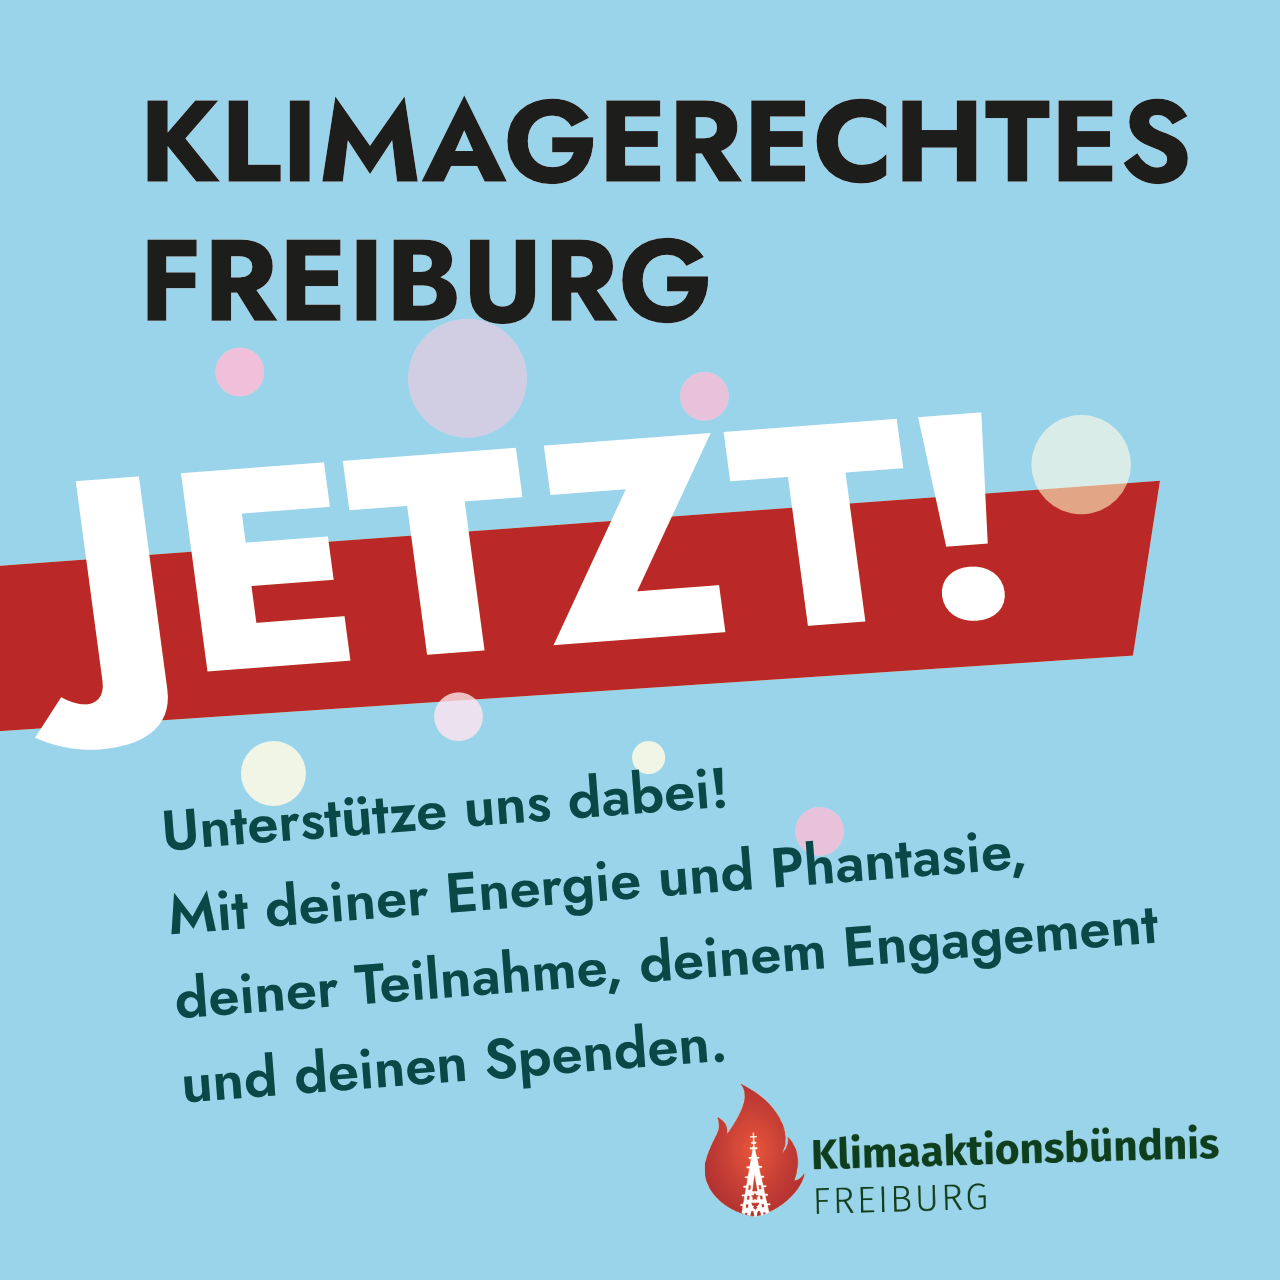 Klimagerechtes Freiburg JETZT!